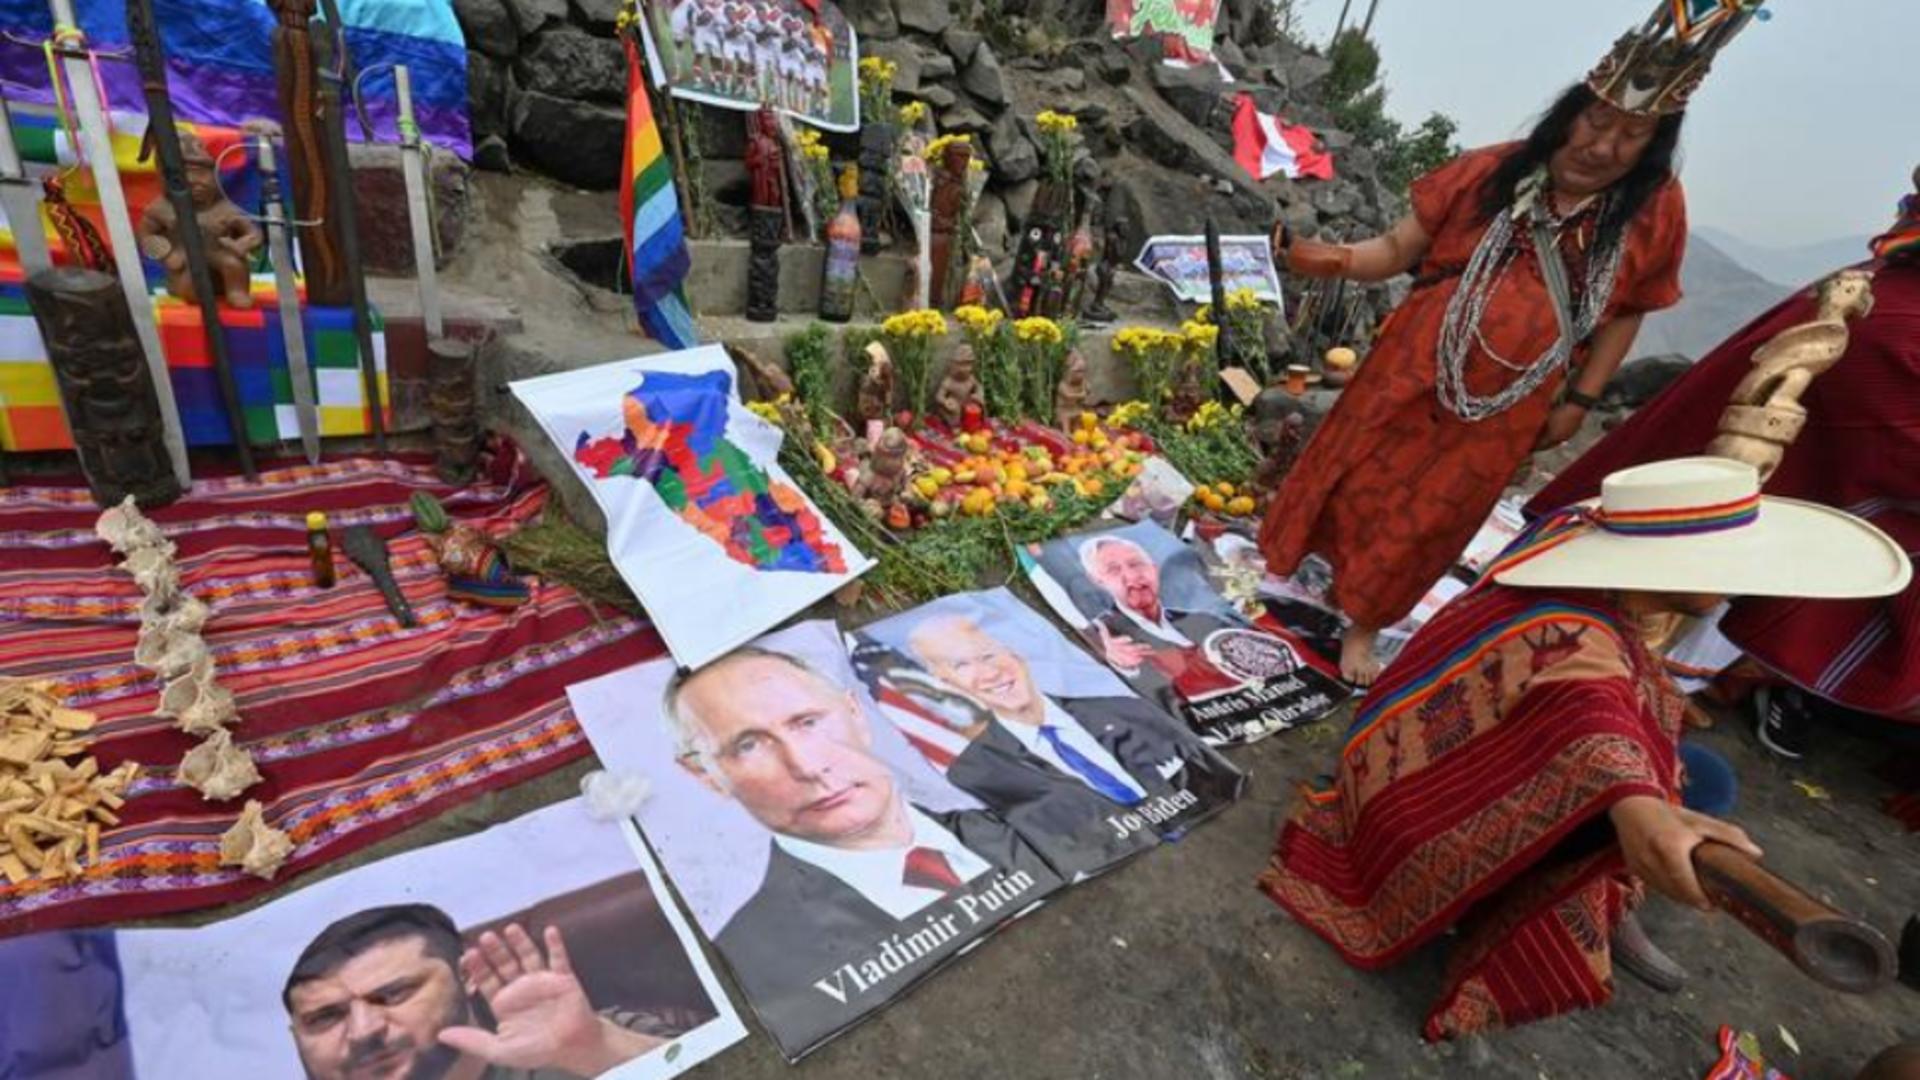  Când se va încheia războiul dintre Rusia și Ucraina - Predicțiile șamanilor din Peru 